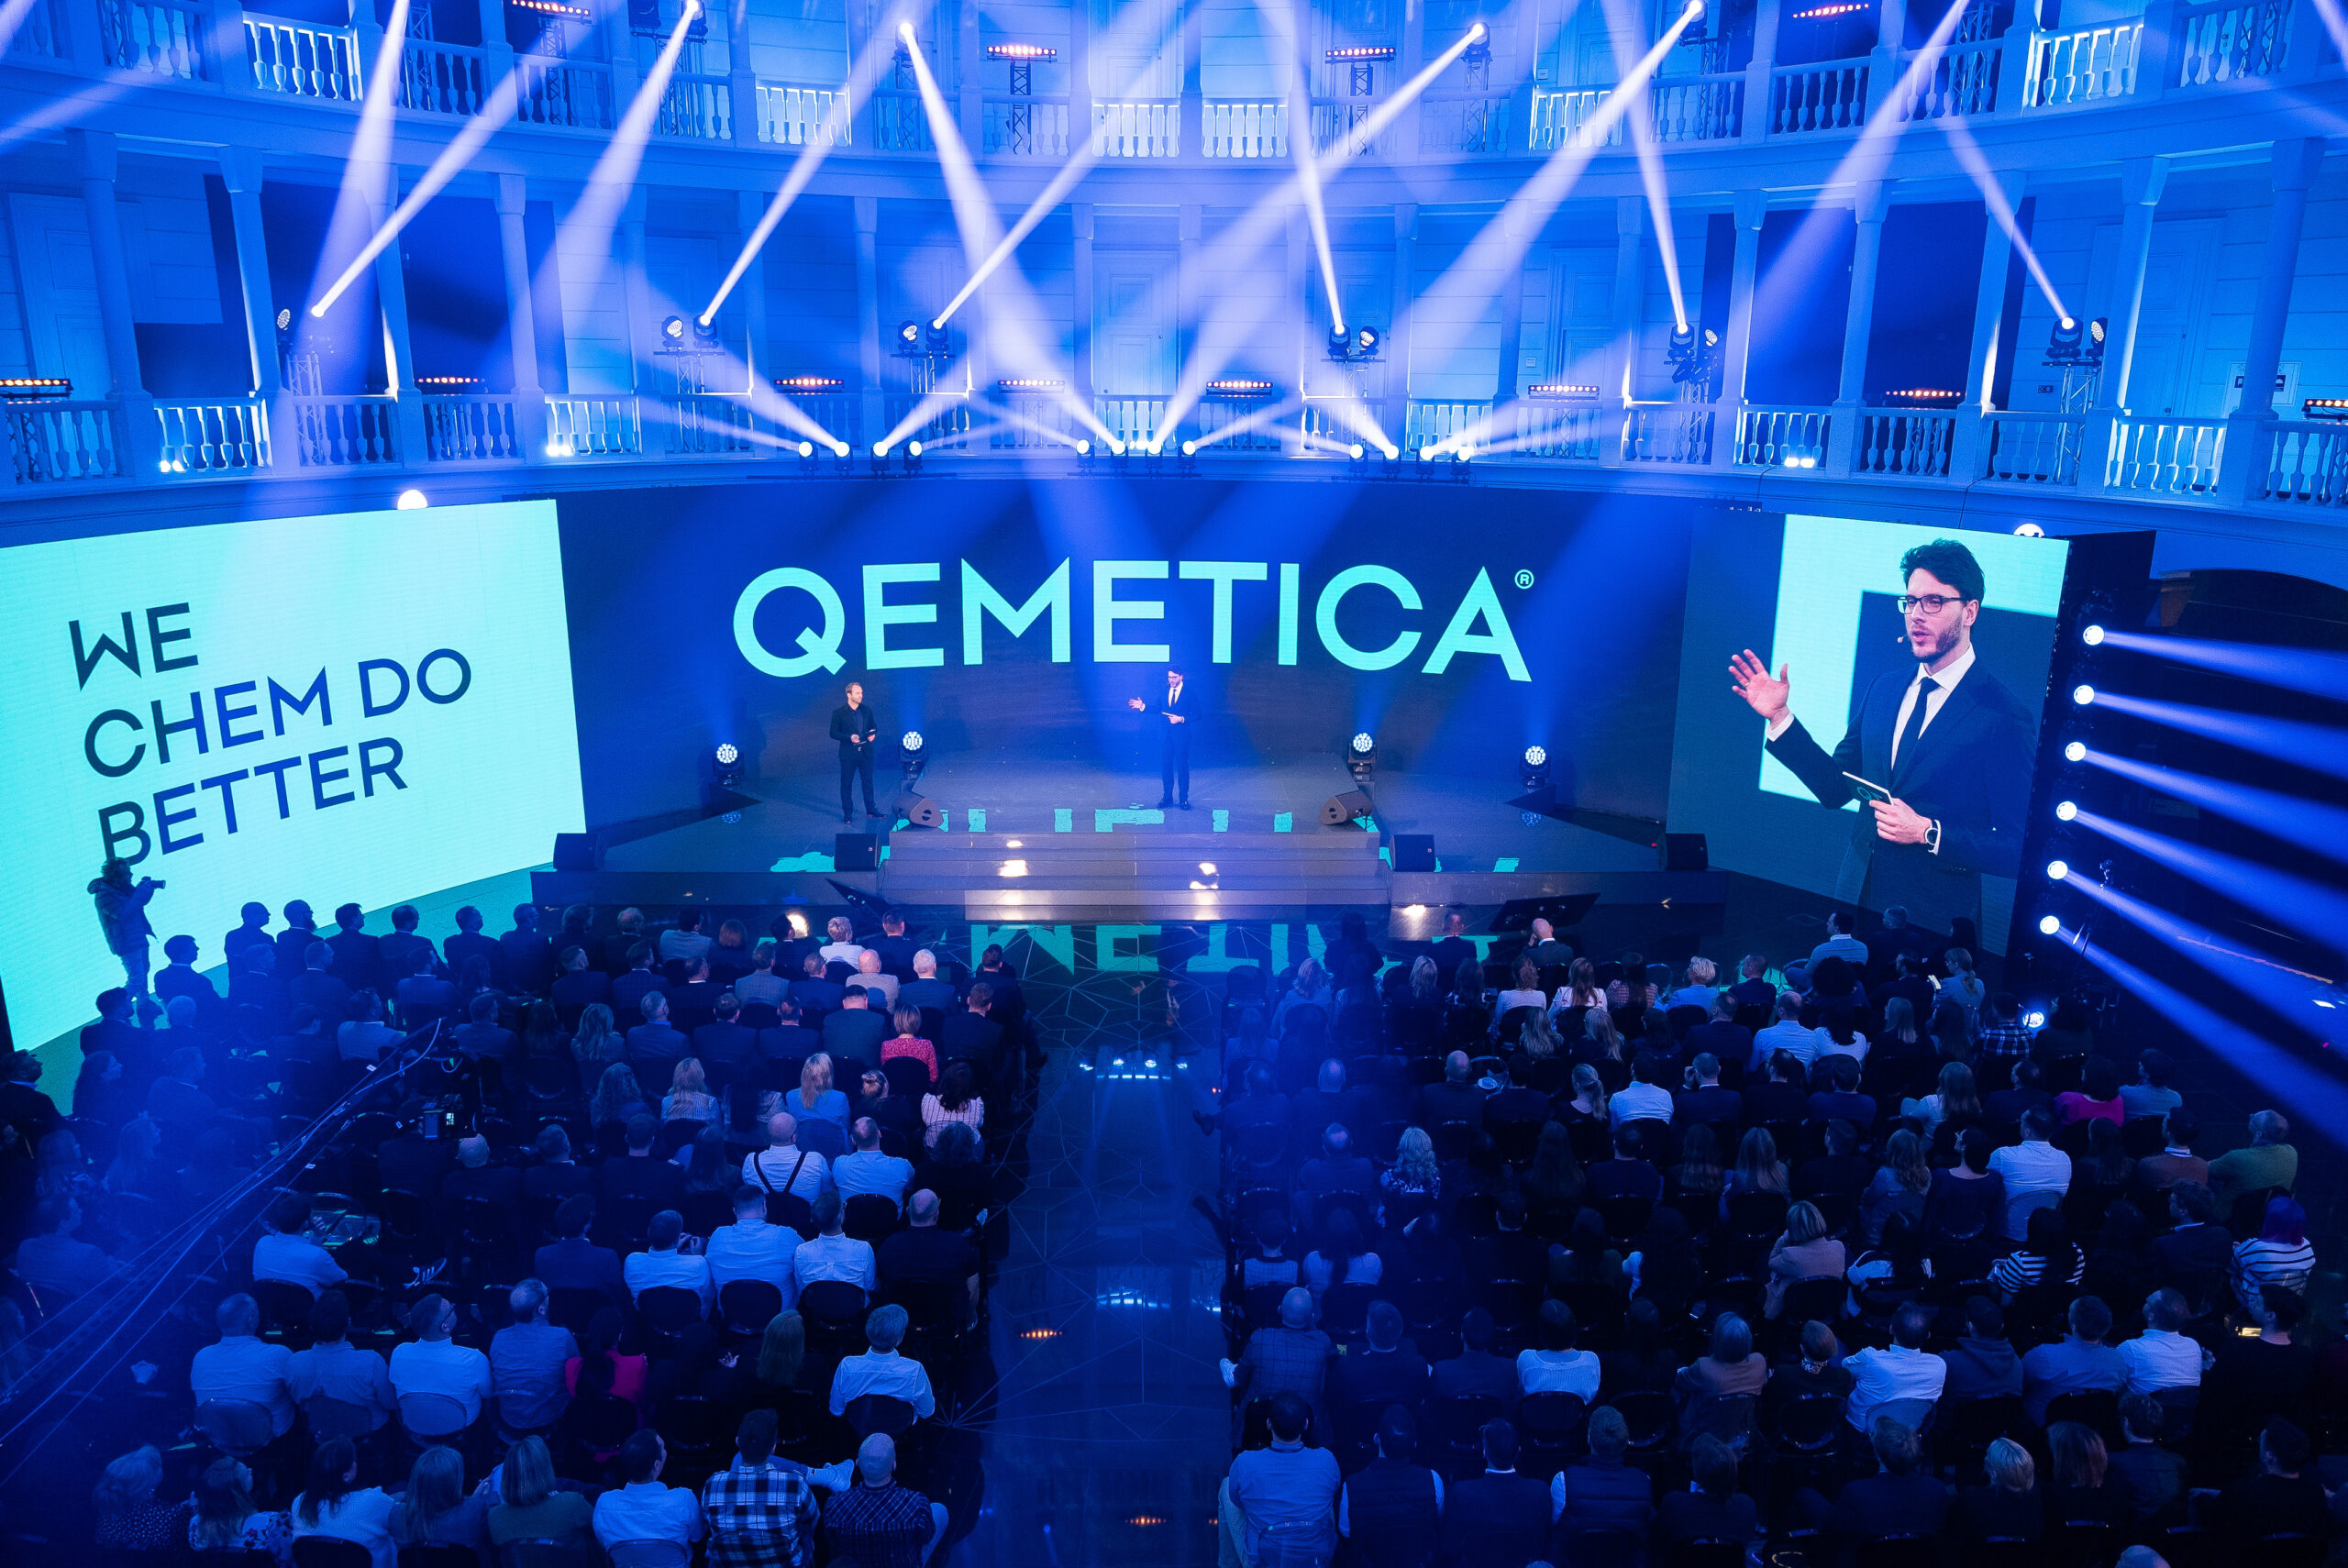 Die CIECH-Gruppe ändert ihren Namen in Qemetica